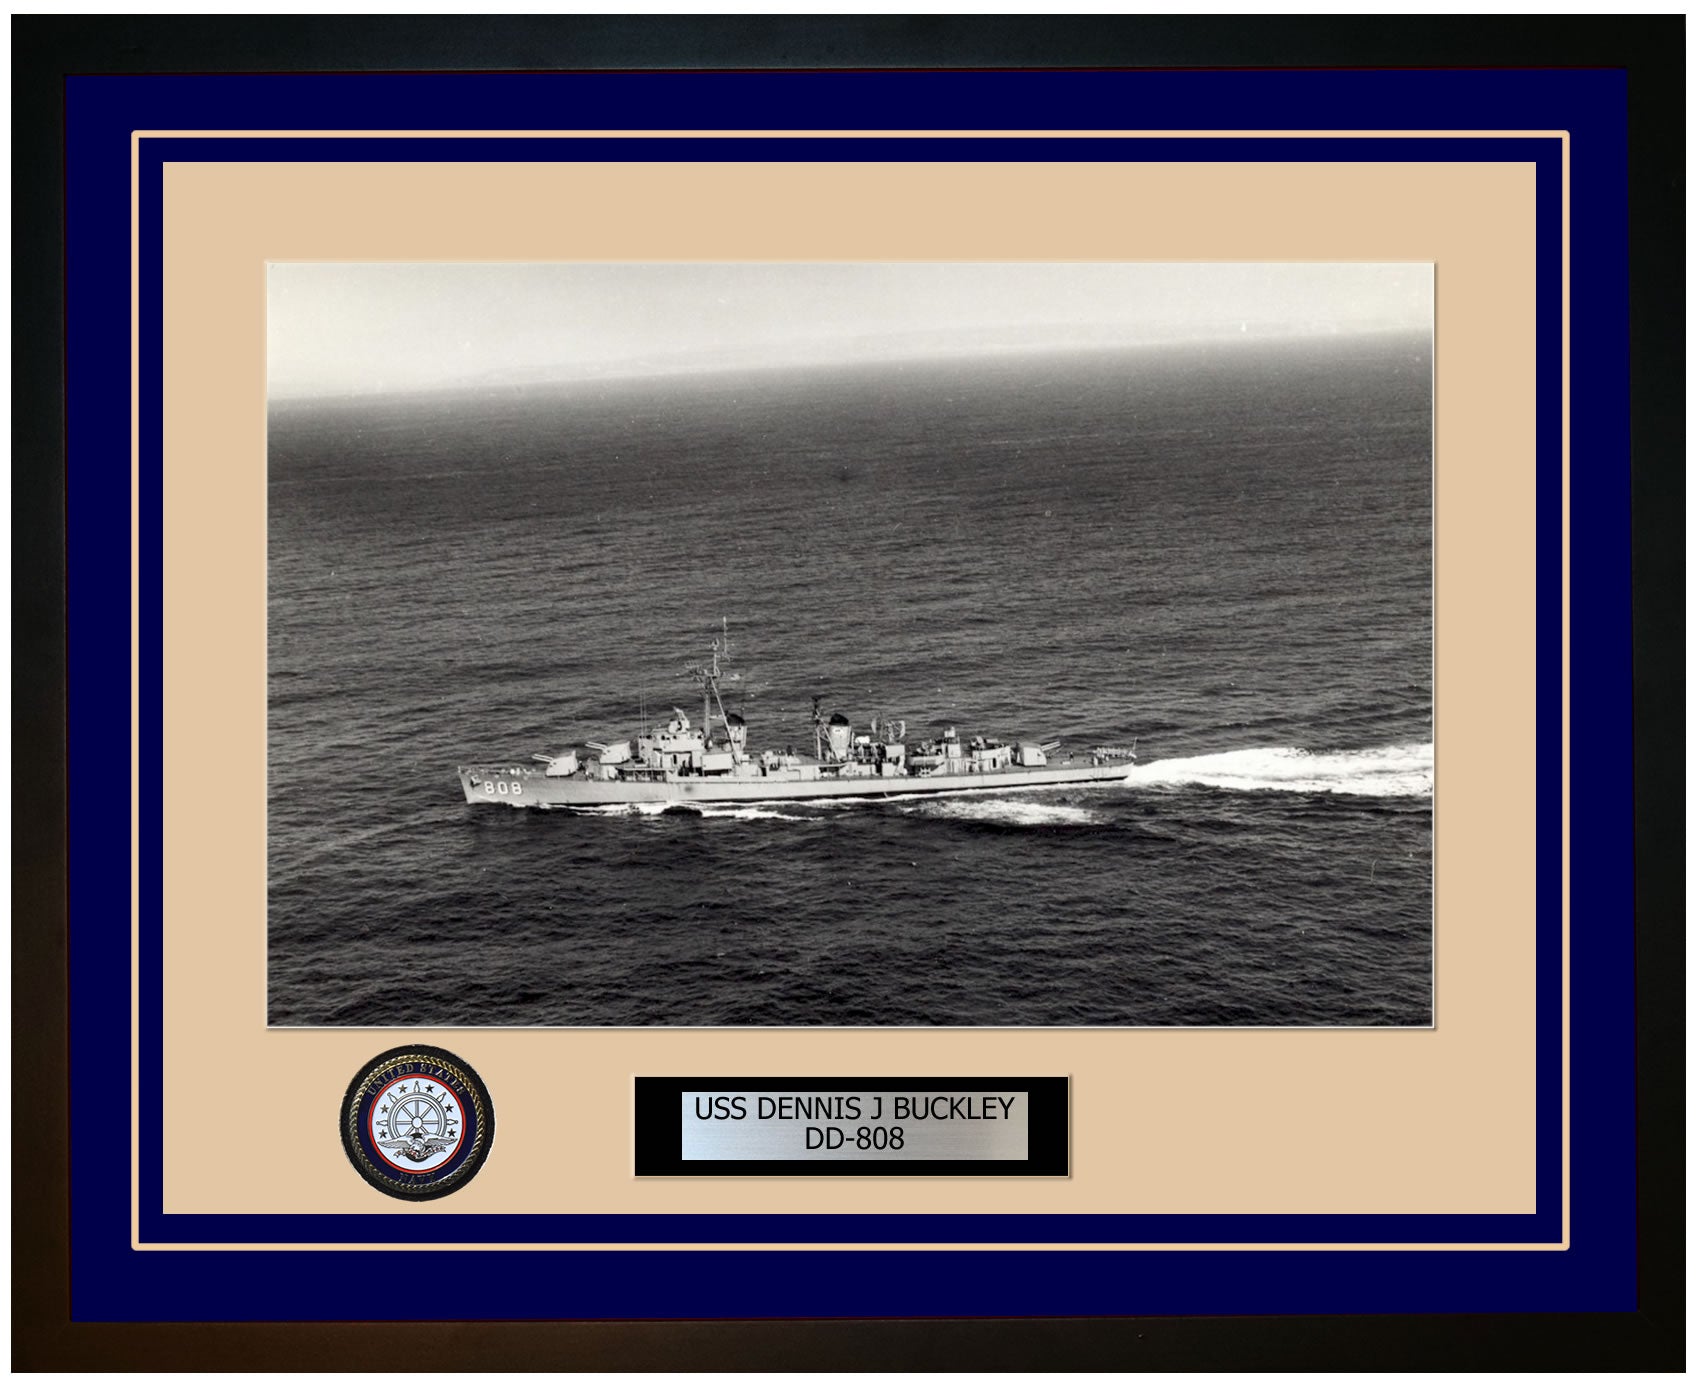 USS DENNIS J BUCKLEY DD-808 Framed Navy Ship Photo Blue